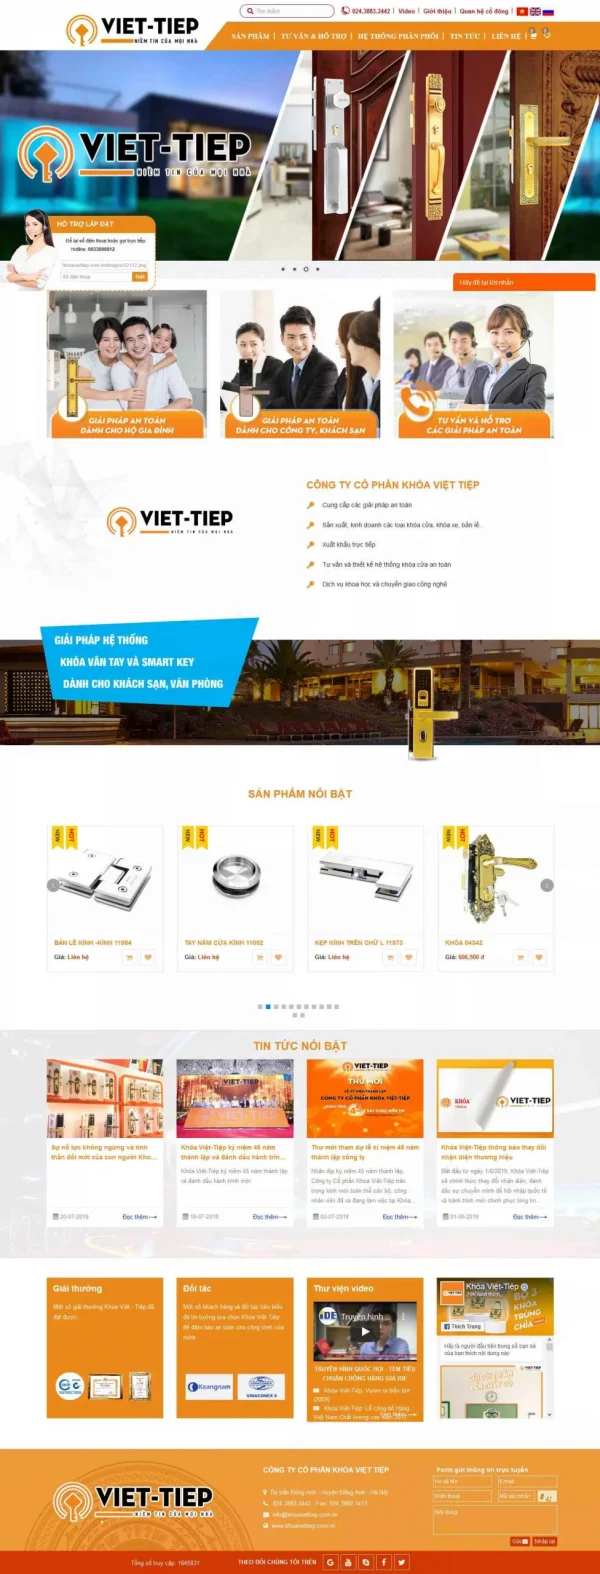 Mẫu giao diện website doanh nghiệp công ty dịch vụ khóa Việt Tiệp